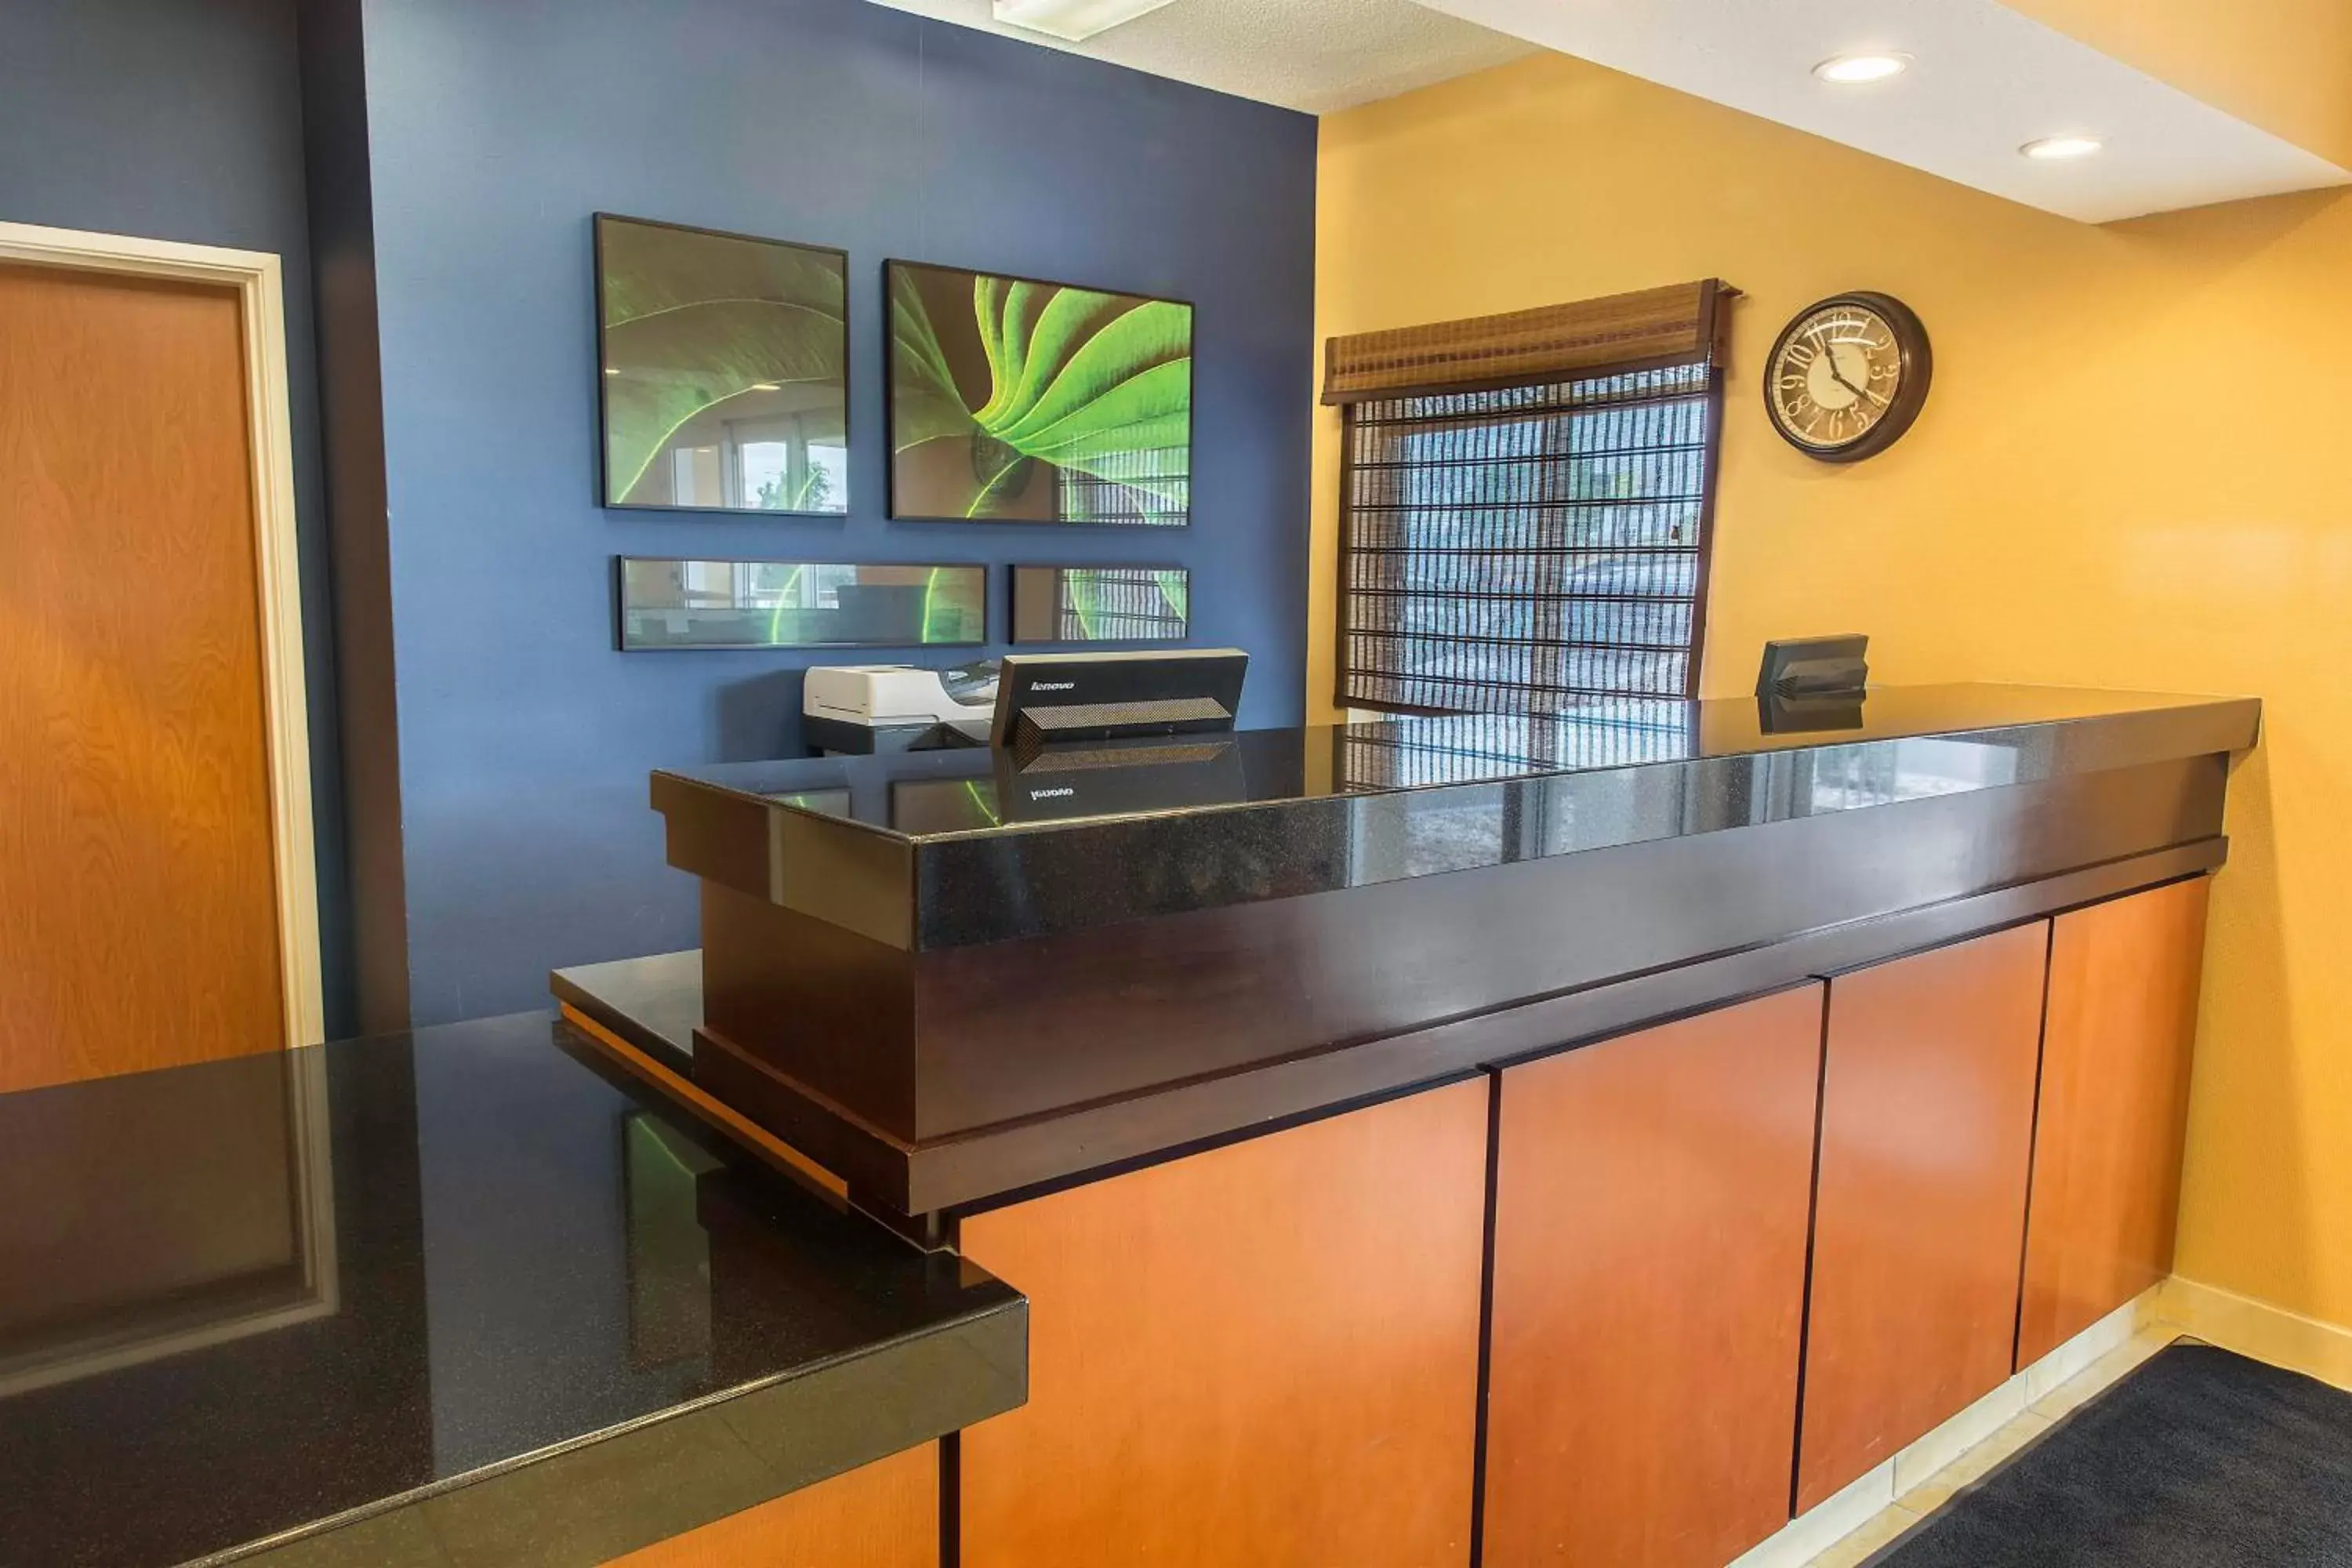 Lobby or reception, Lobby/Reception in Fairfield Inn & Suites Fargo